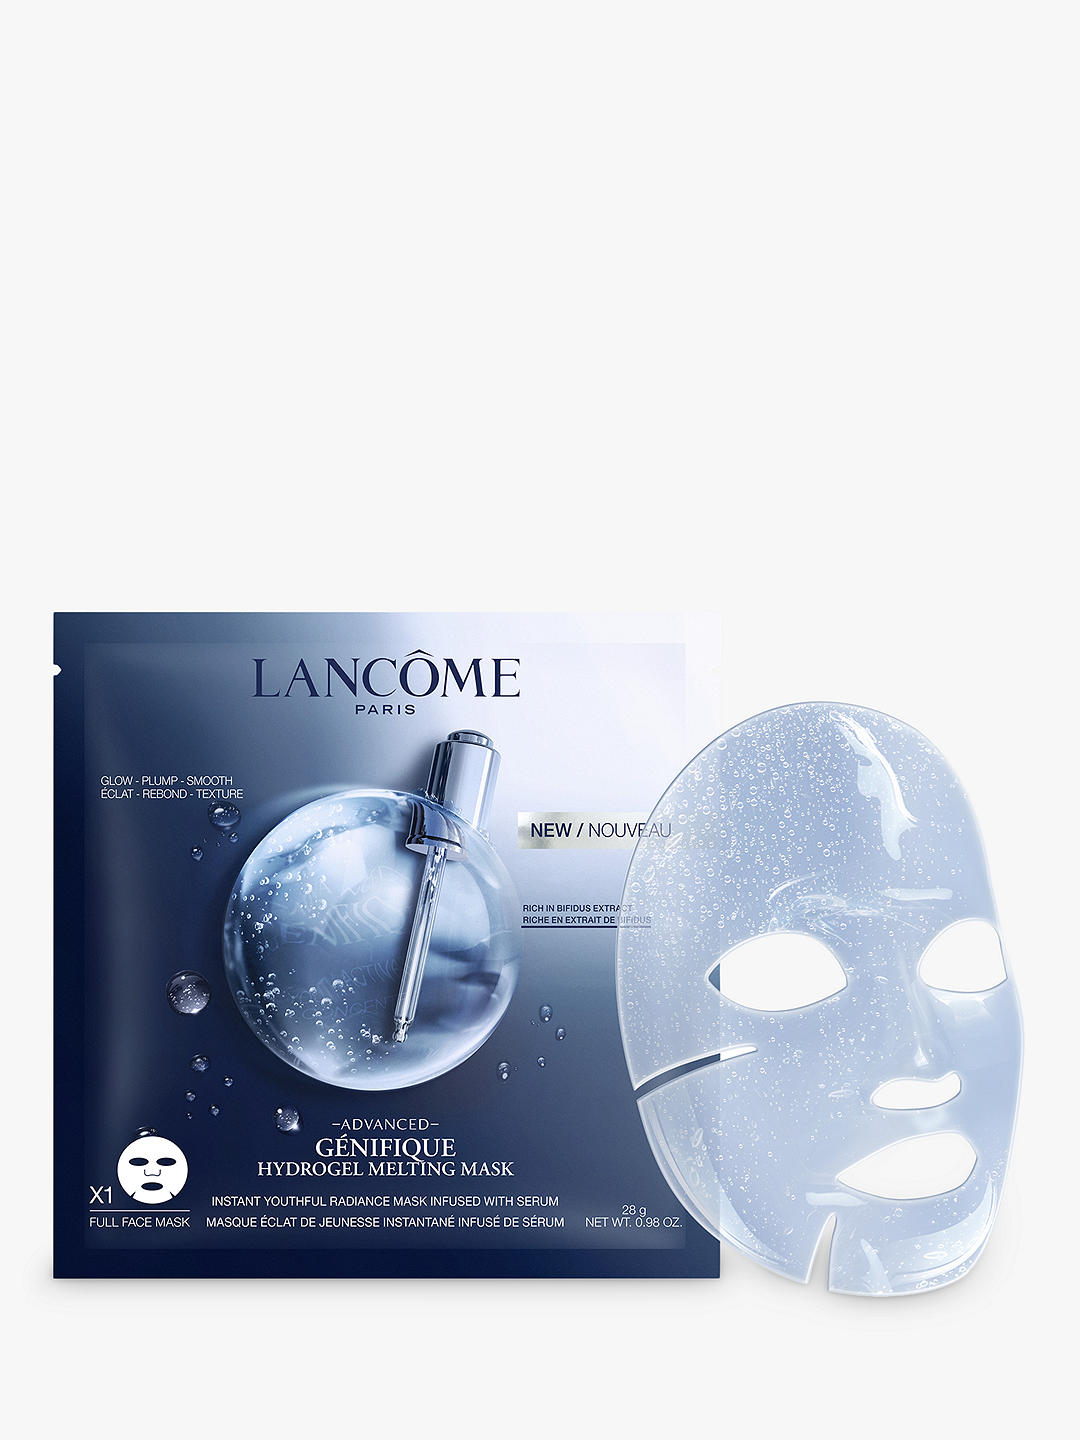 Lancôme Génifique Hydrogel Melting Mask,  x 1 1